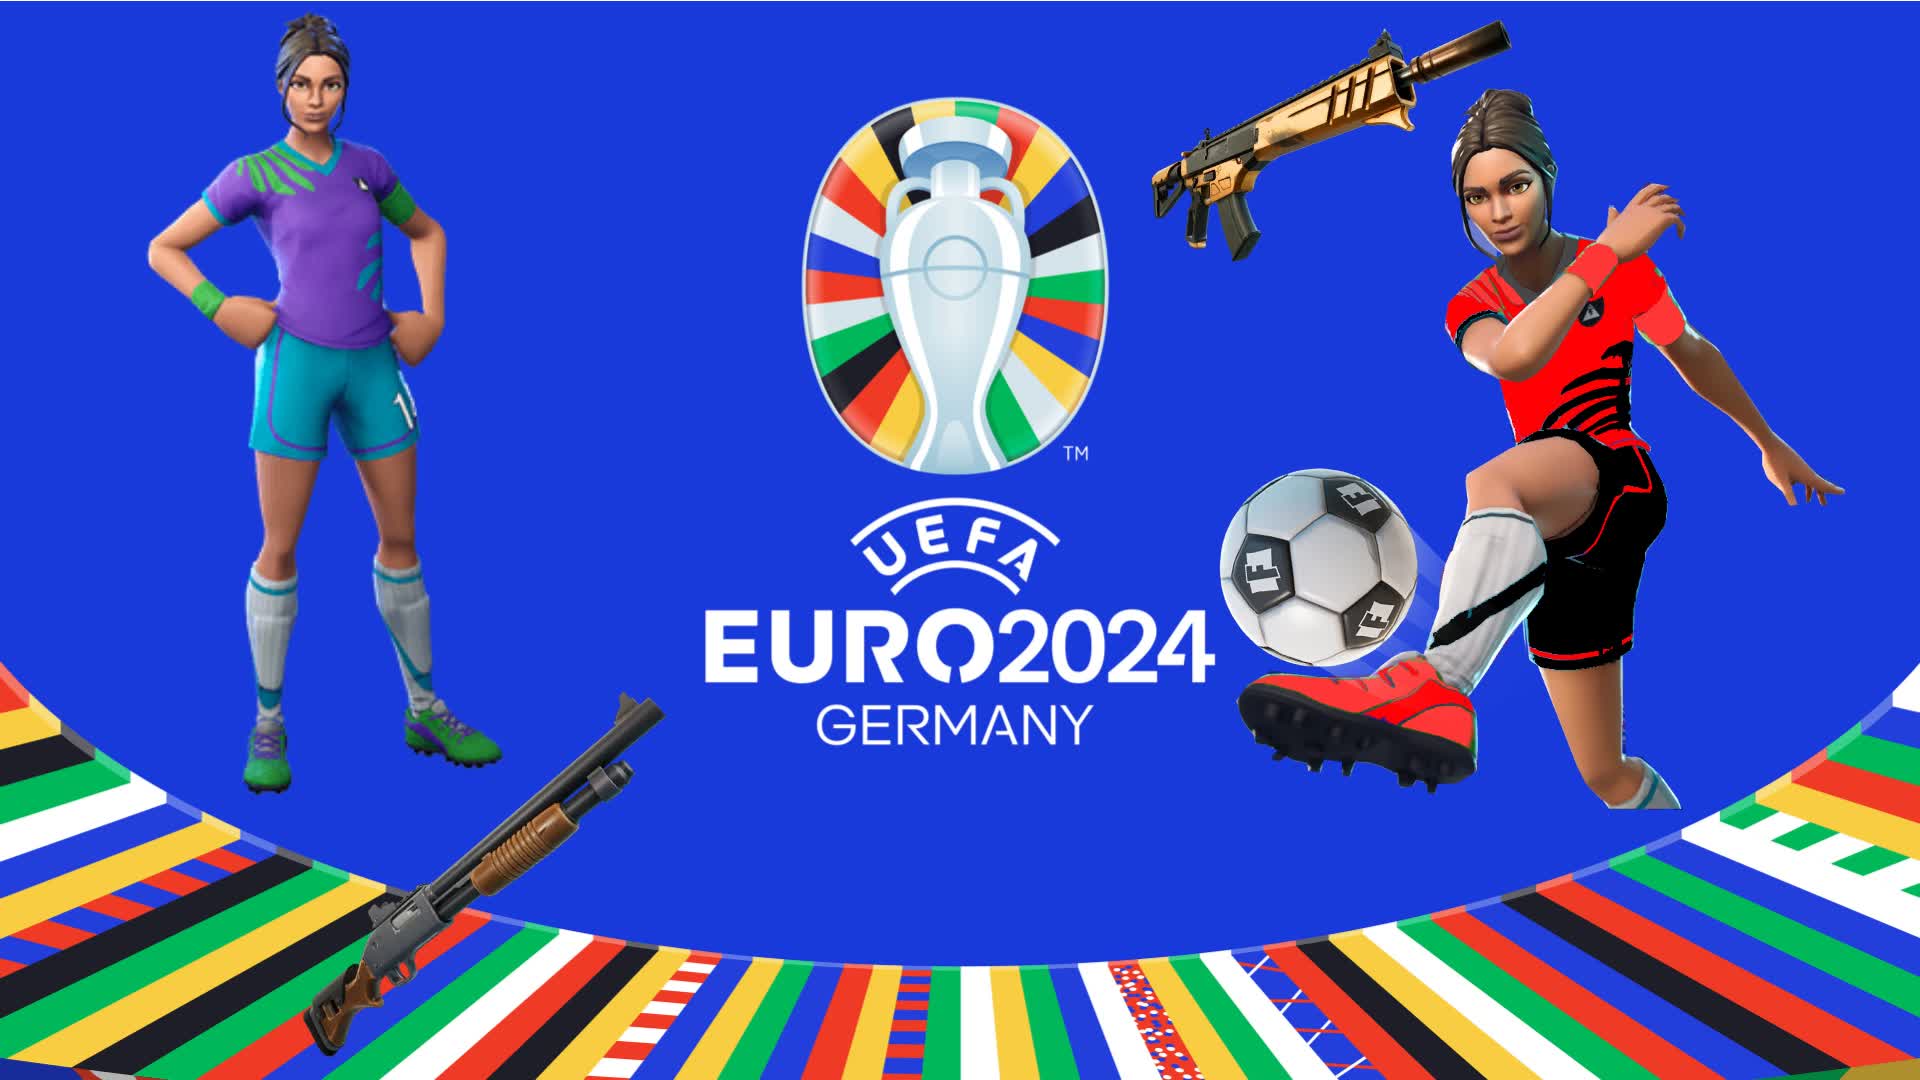 【注目の島】EURO 2024 - THE PIT